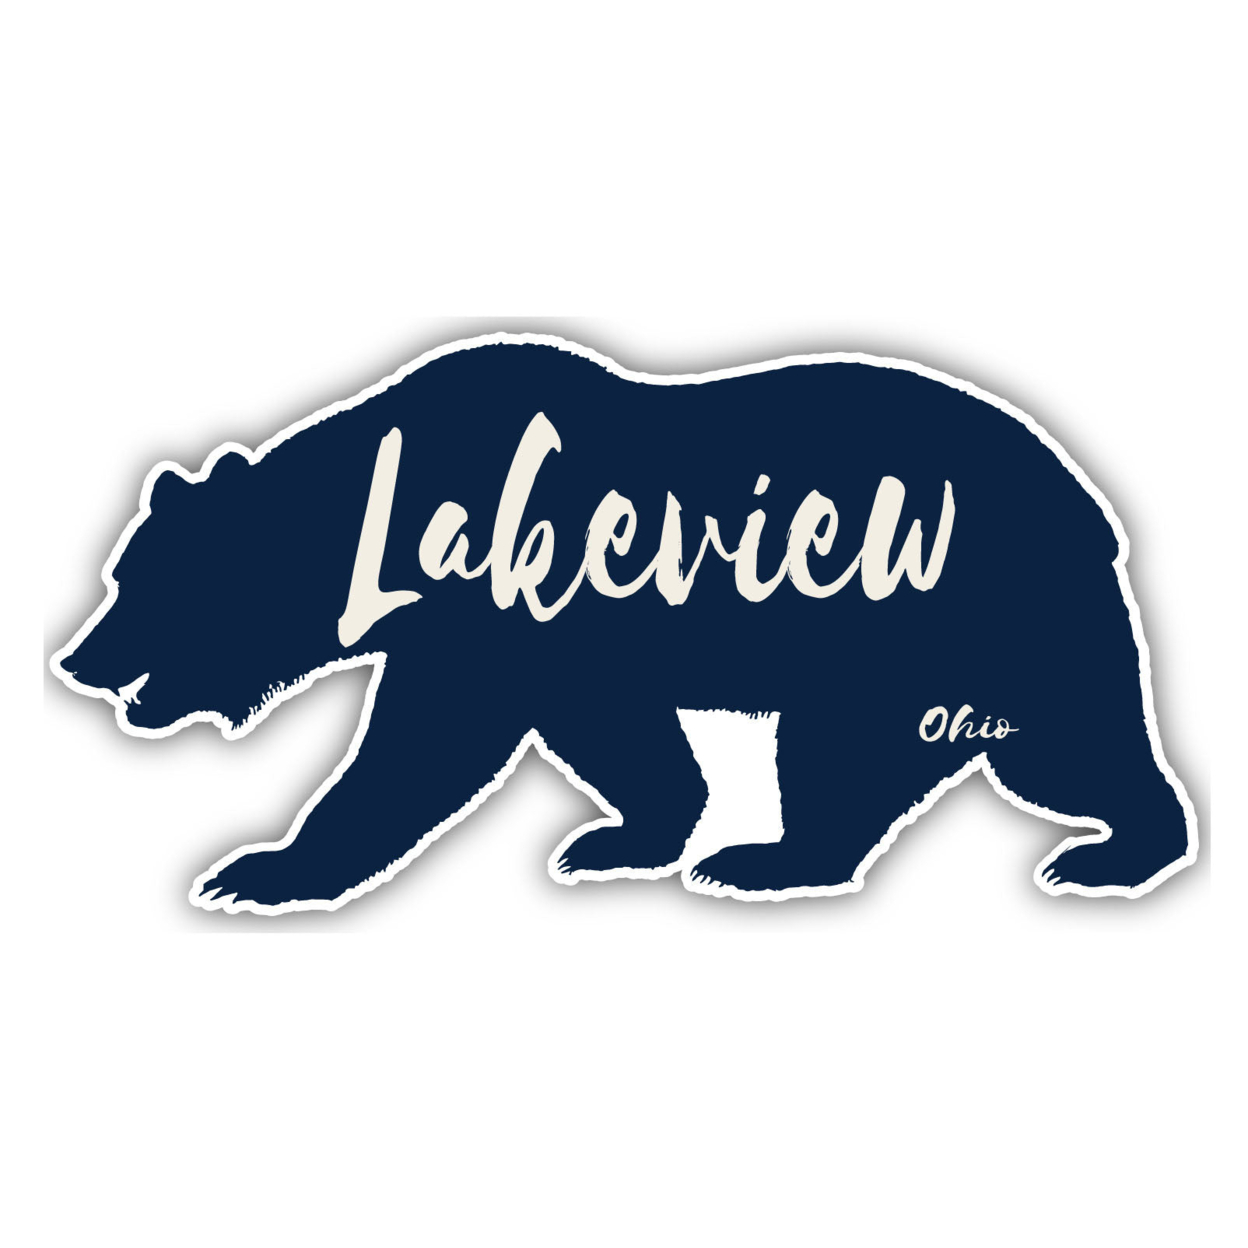 Laketown Utah Souvenir Decorative Stickers (Choose Theme And Size) - 4-Inch, Bear